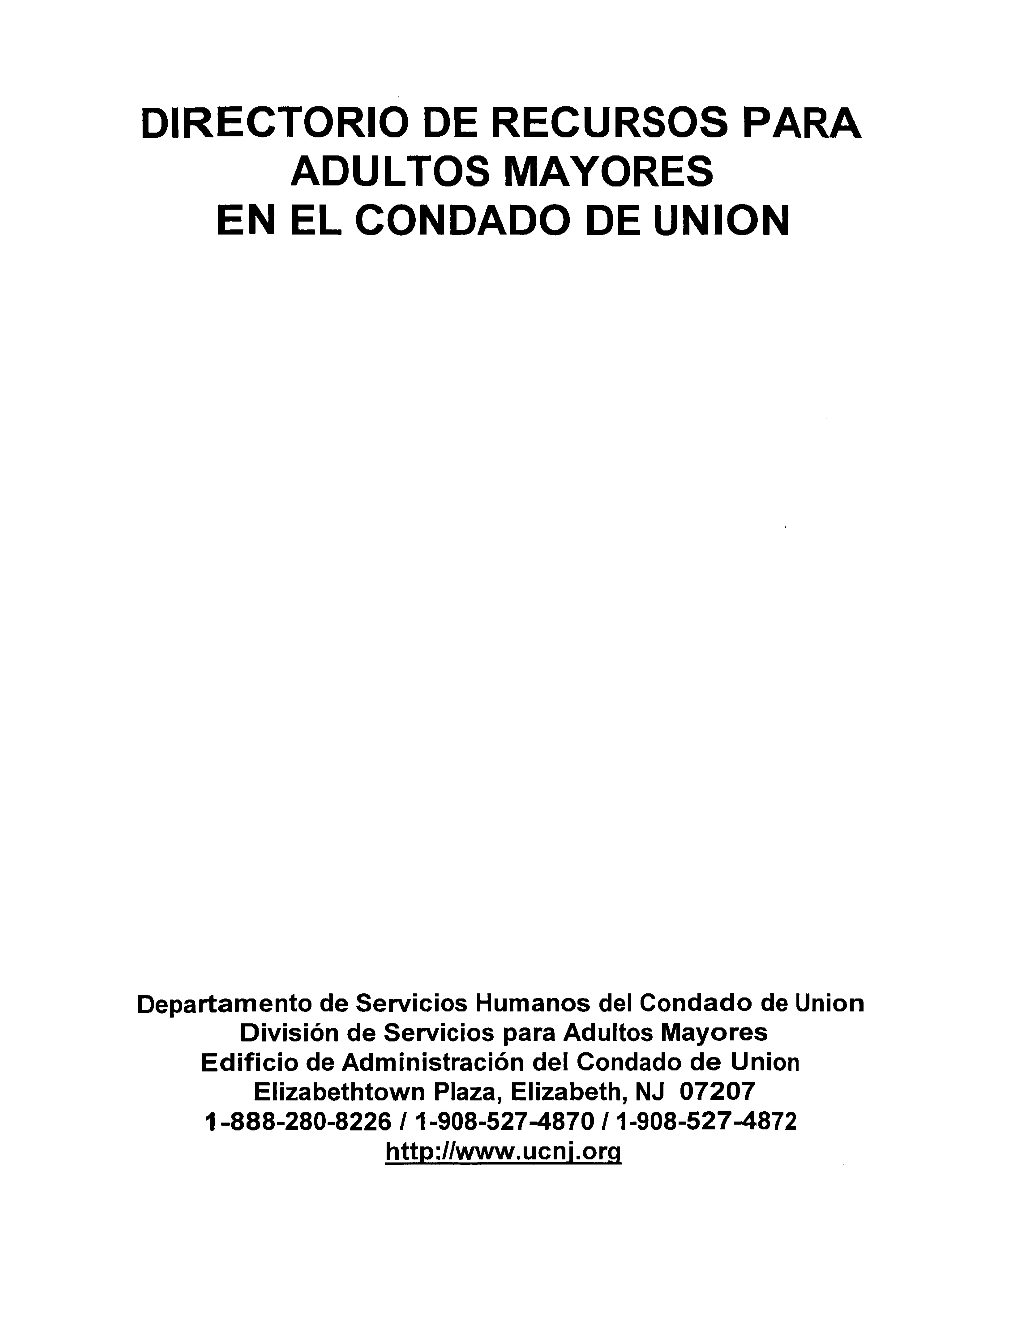 Directorio De Recursos Para Adultos Mayores En El Condado De Union